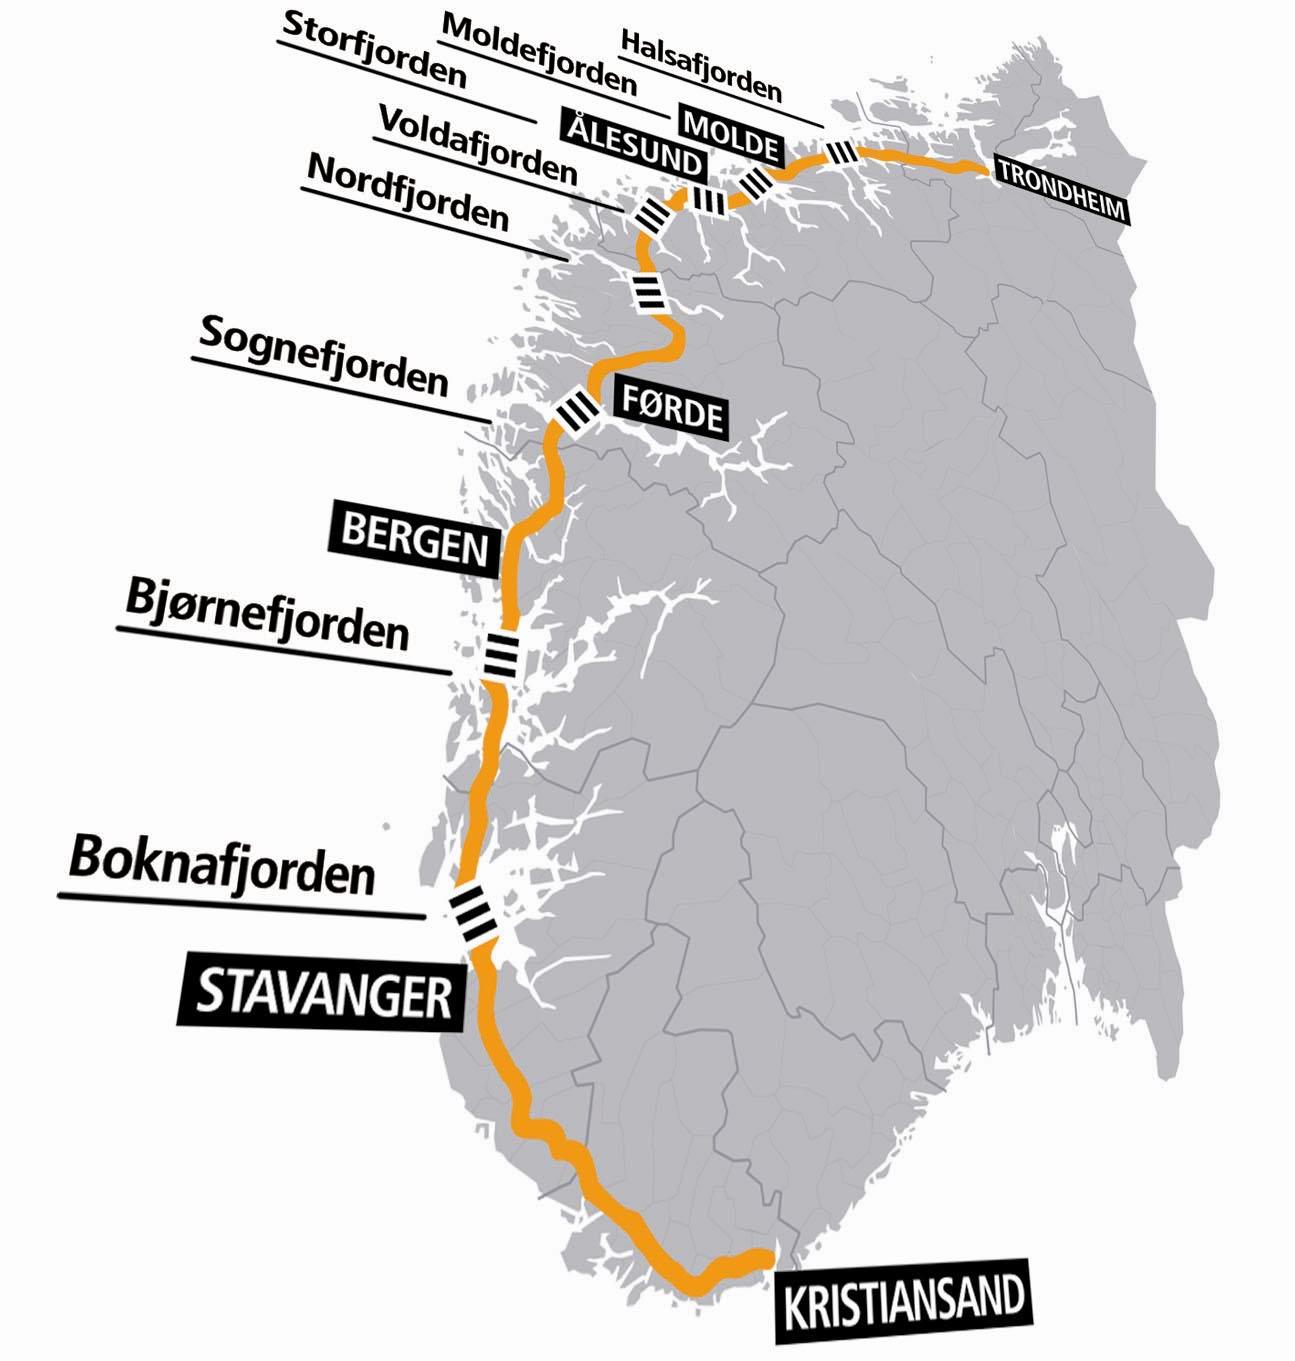 E39 Fjordkryssingene Nokre nøkkeltall (bredde, djupn) Halsafjorden, 2 km, 5-600 m Moldefjorden, 13 km undersjøisk tunnel - 330 m + 1,6 km bru, 5-600 m Sulafjorden, 5-6 km, 500 m Nordfjorden, 1,7 km,